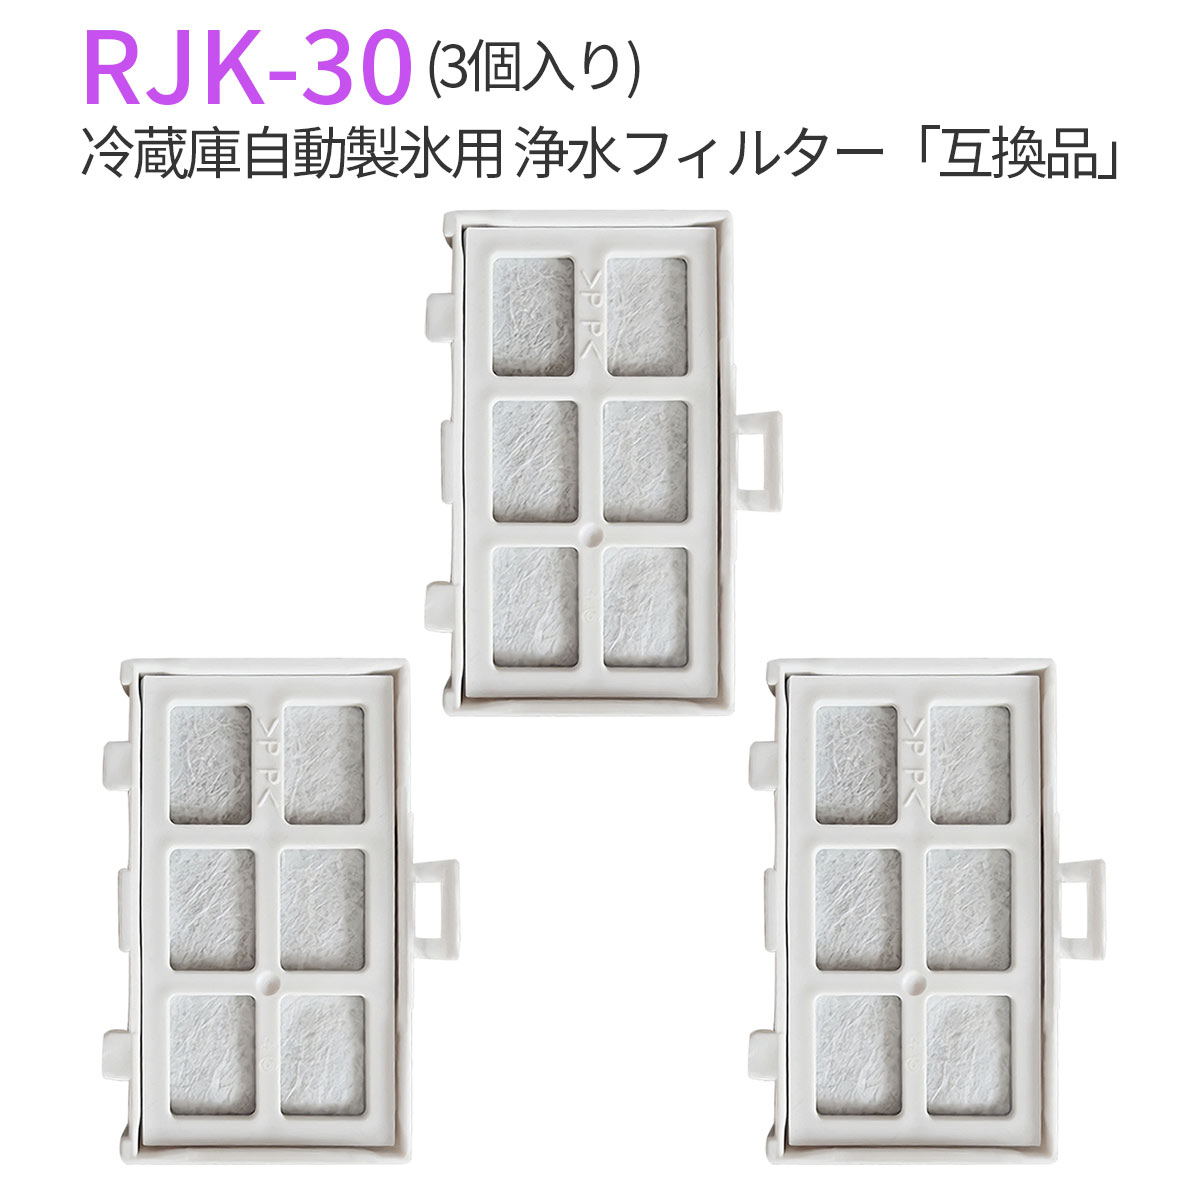 浄水フィルター rjk-30 冷蔵庫 製氷機フィルター RJK30-100 日立冷蔵庫 交換用 フィルター (互換品/3個入り)